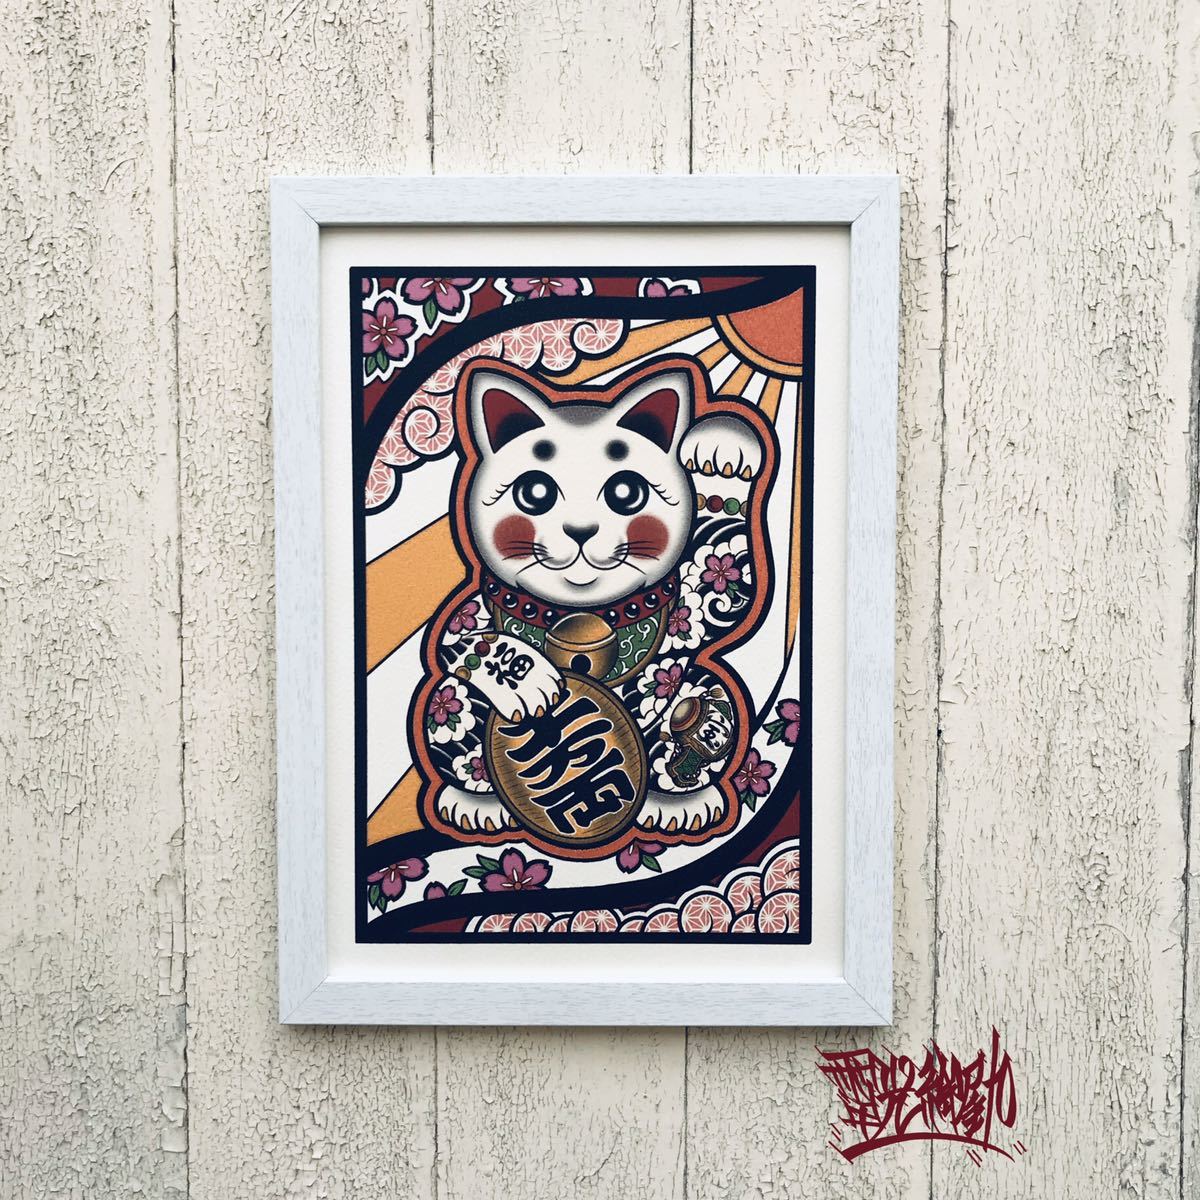 Okyu 纹身艺术, 招财猫, 樱吹雪, 打出的小土, A4 尺寸, 白色的, 包含艺术画框, 手工制品, 内部的, 杂货, 装饰品, 目的